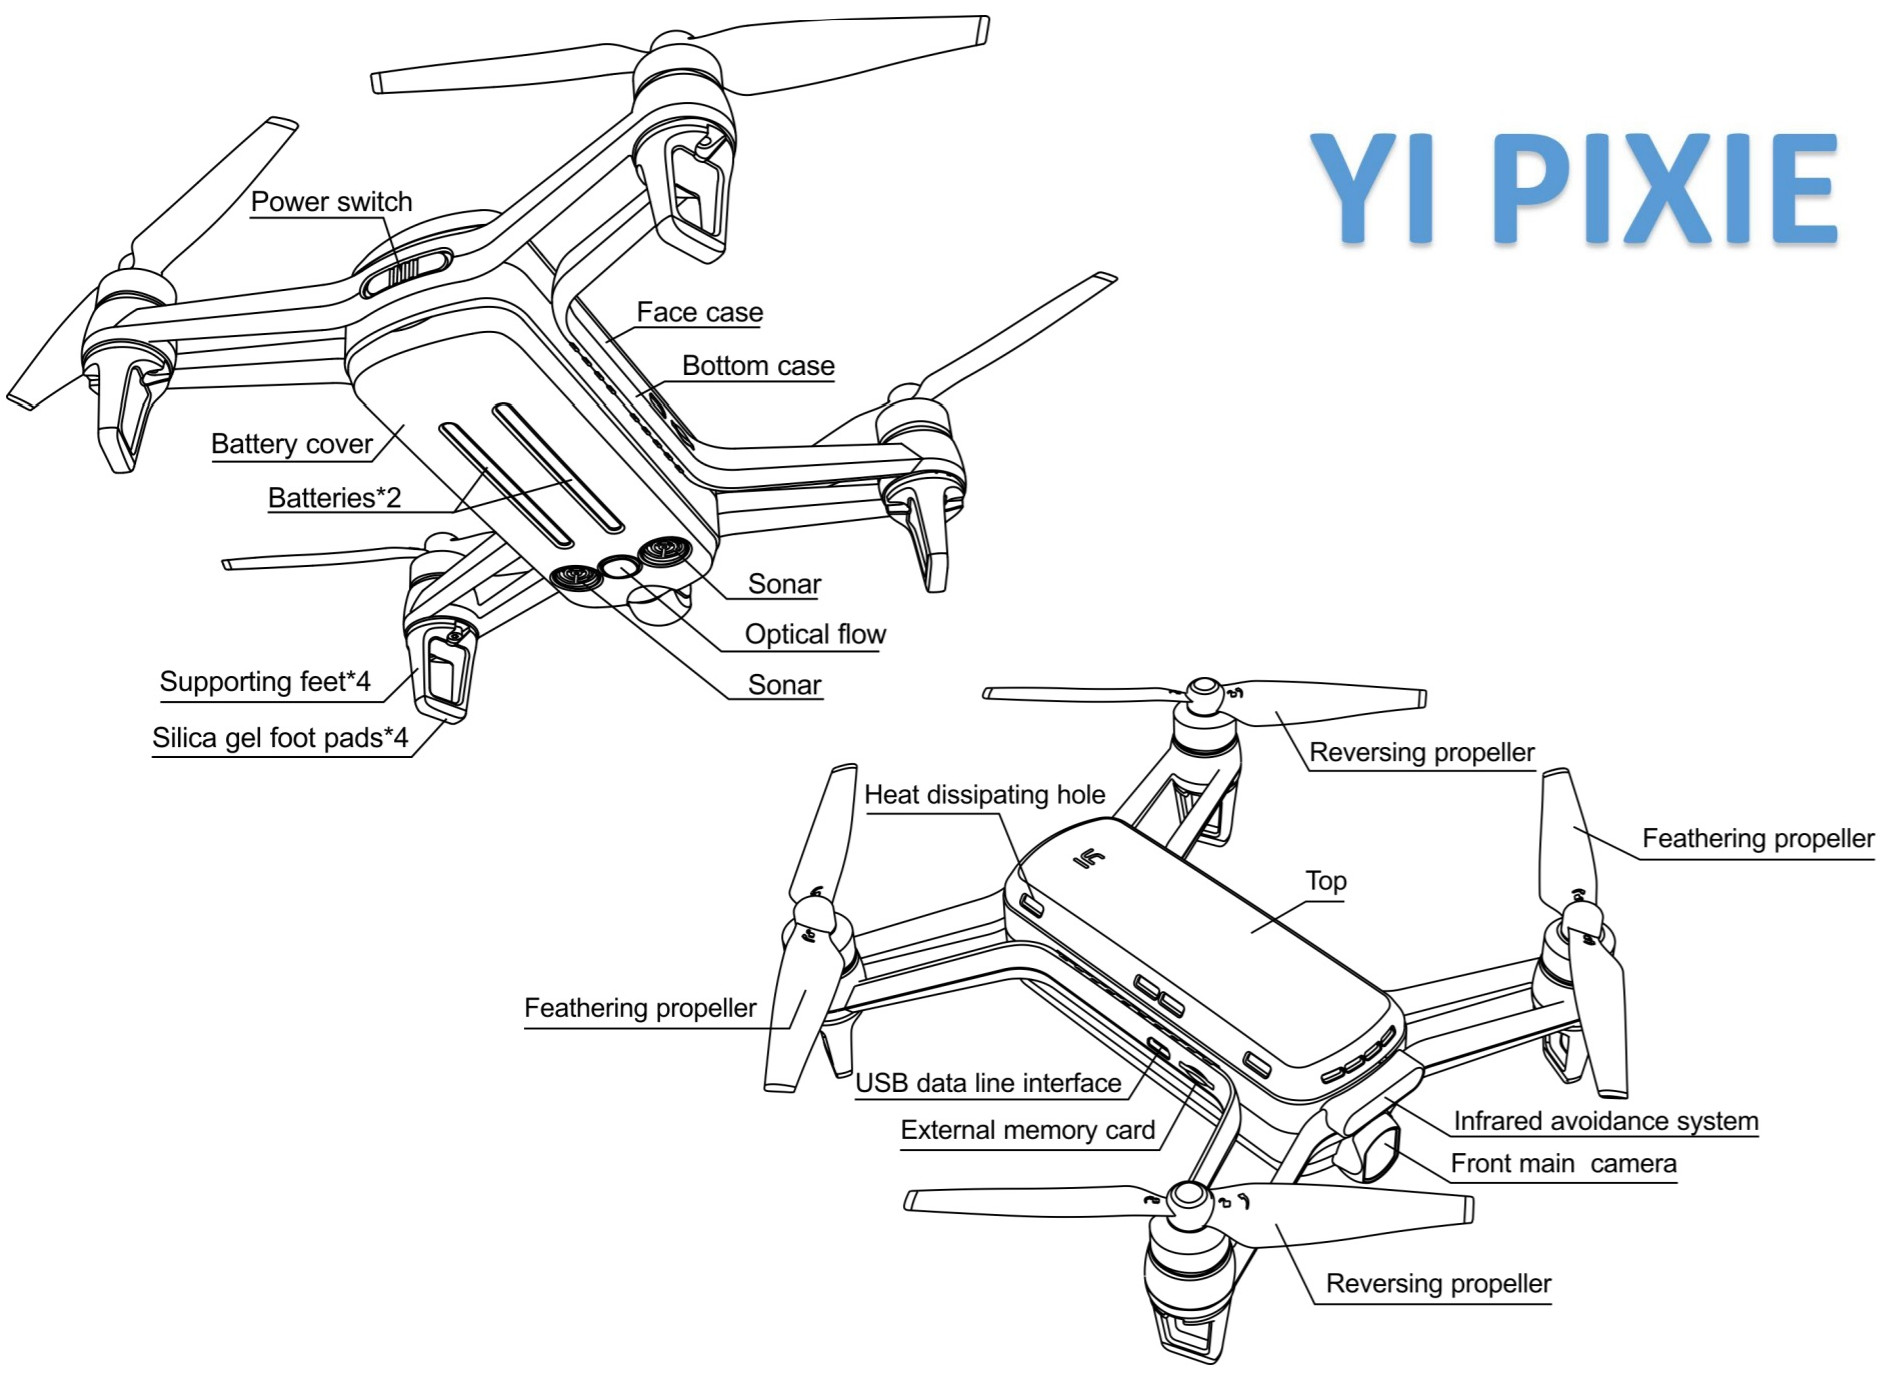 yi-pixie-drone-fcc-1.jpg